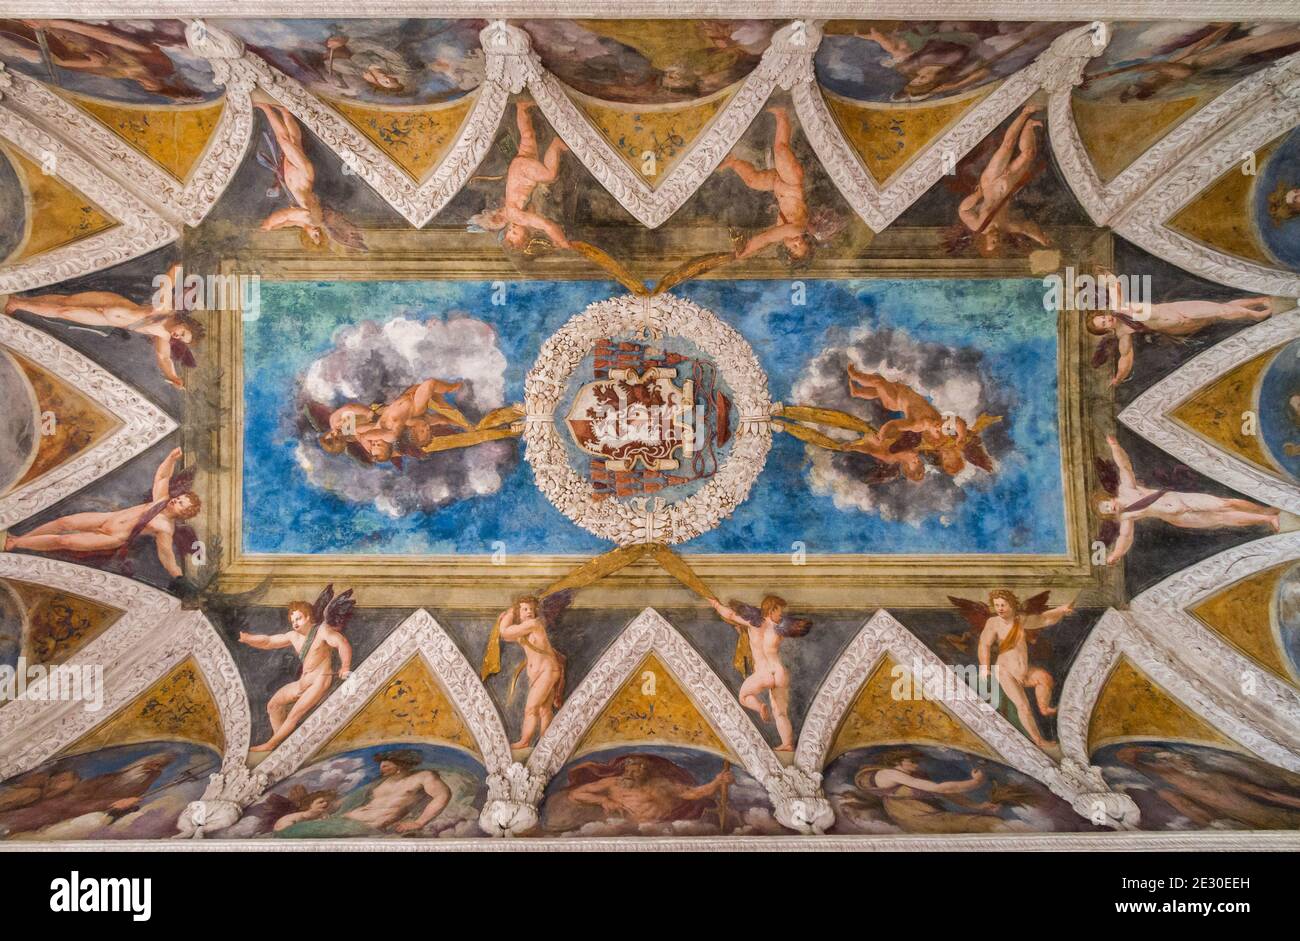 Blick auf die Gemälde im Schloss Buonconsiglio in Trient. Trient, Trient, Trentino-Südtirol, Italien, Europa. Stockfoto